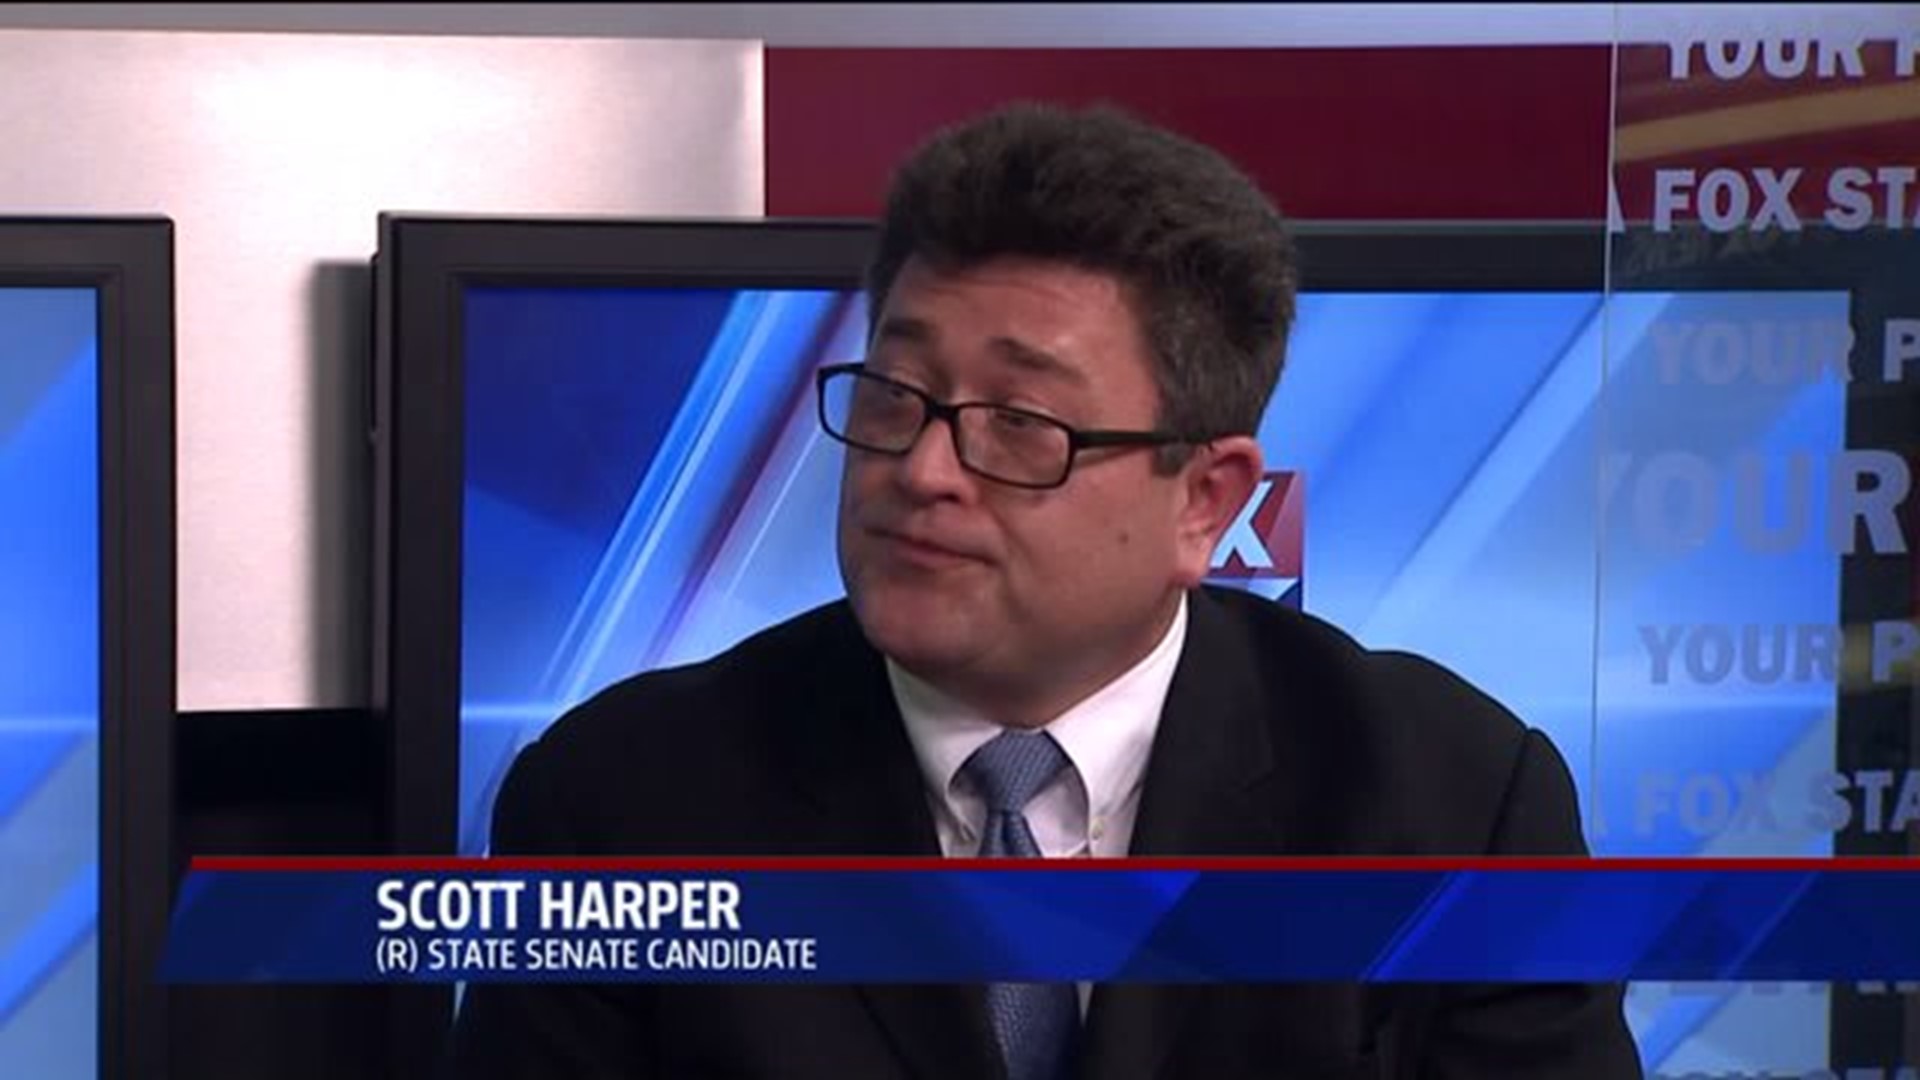 Interview with Scott Harper